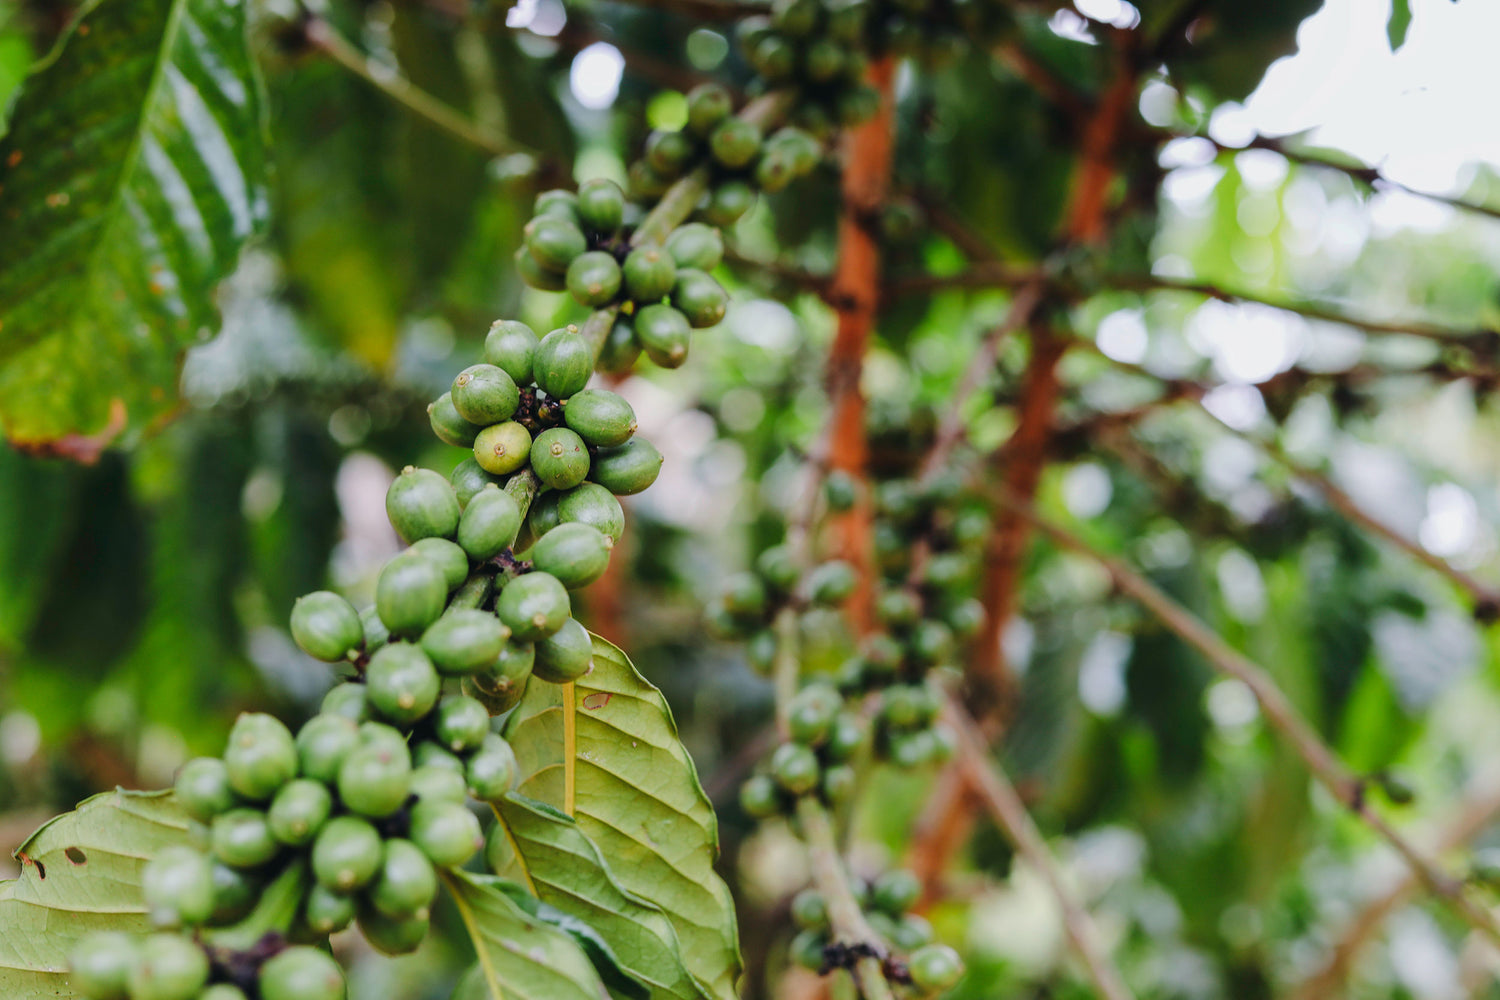 Buy Mexico Chiapas Decaf Single Origin Coffee